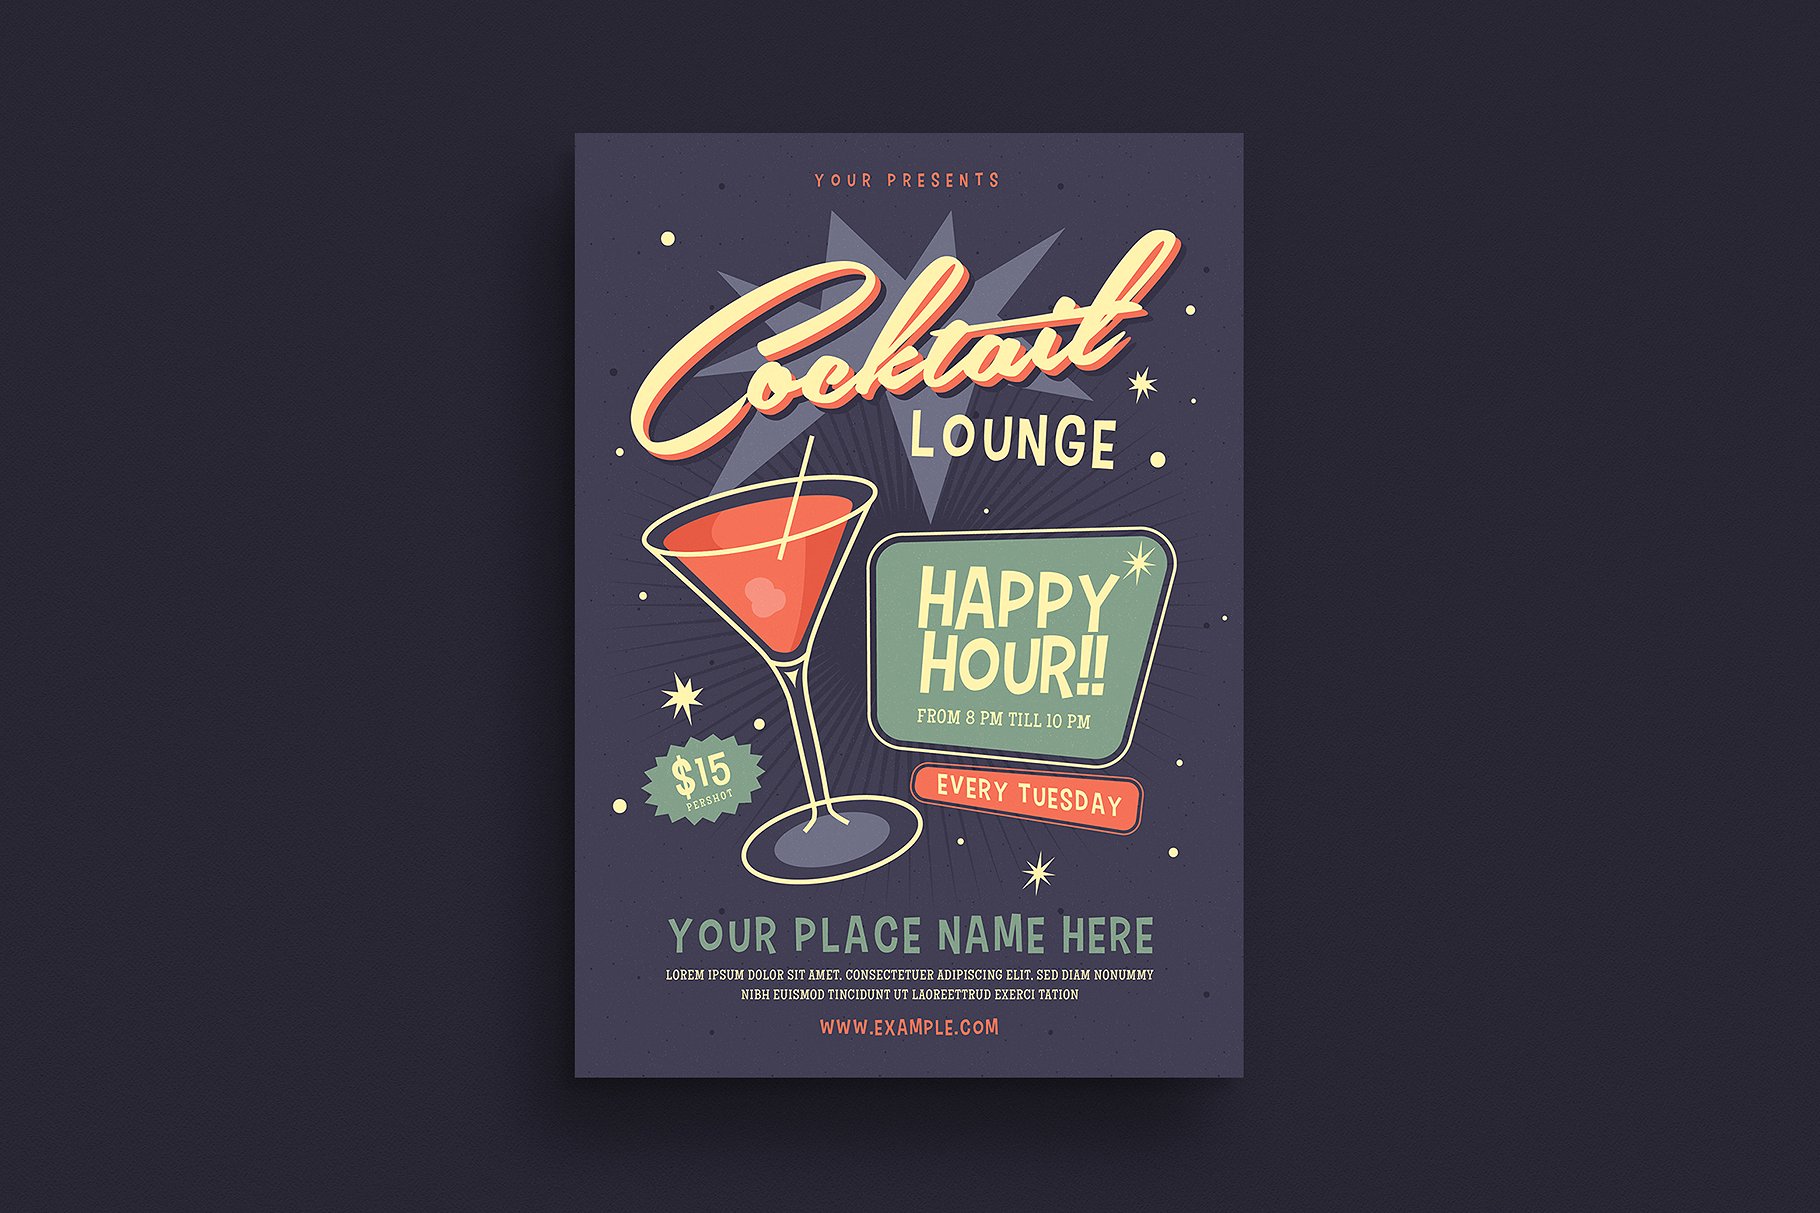 复古设计风格鸡尾酒酒会活动海报设计模板 Retro Cocktail Event Flyer插图